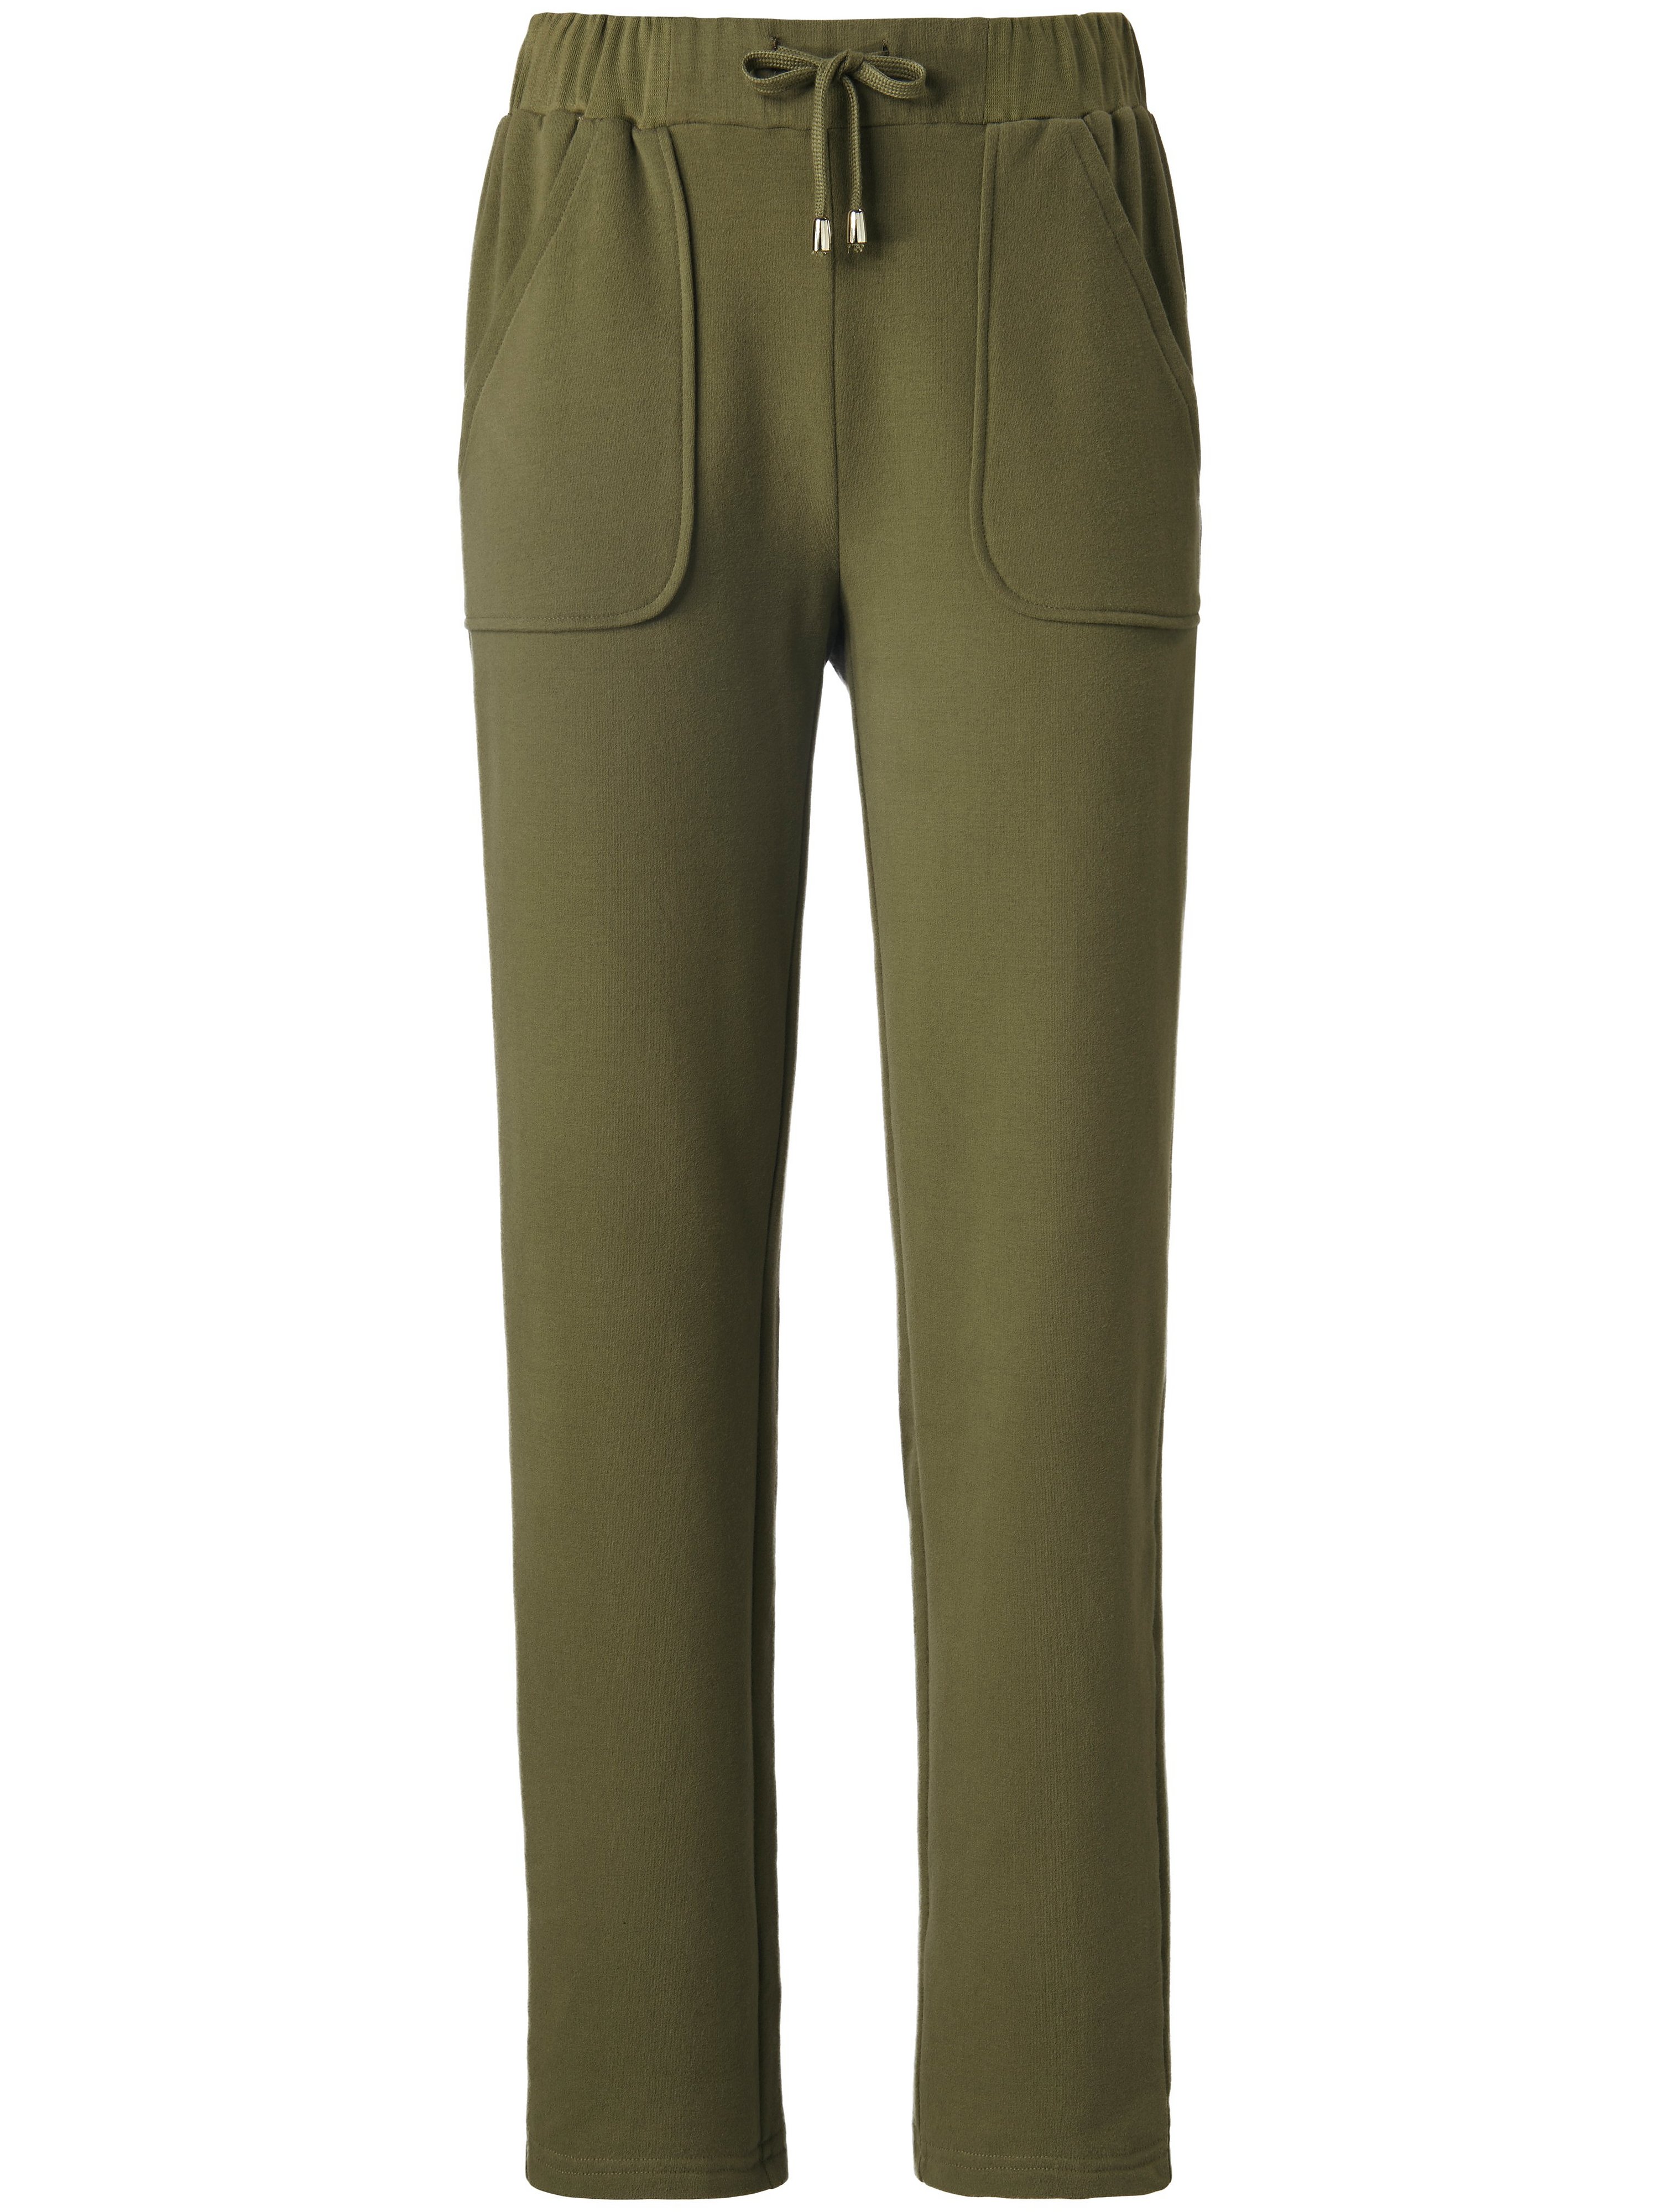 Le pantalon sweat avec 2 poches  PETER HAHN PURE EDITION vert